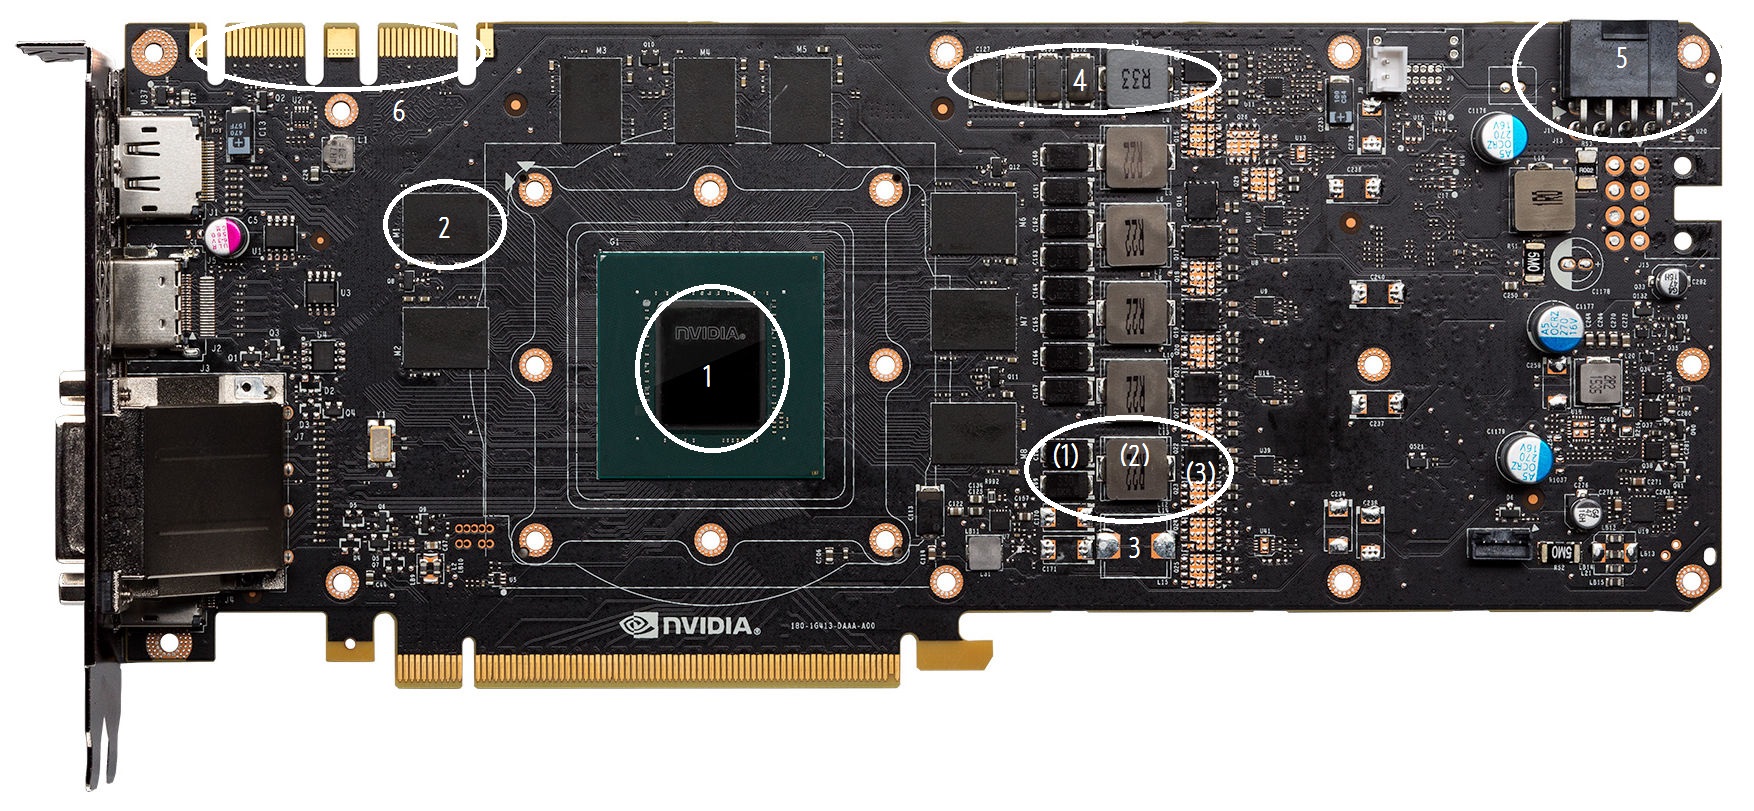 NVIDIA-GeForce-GTX-1080-PCB-2.jpg